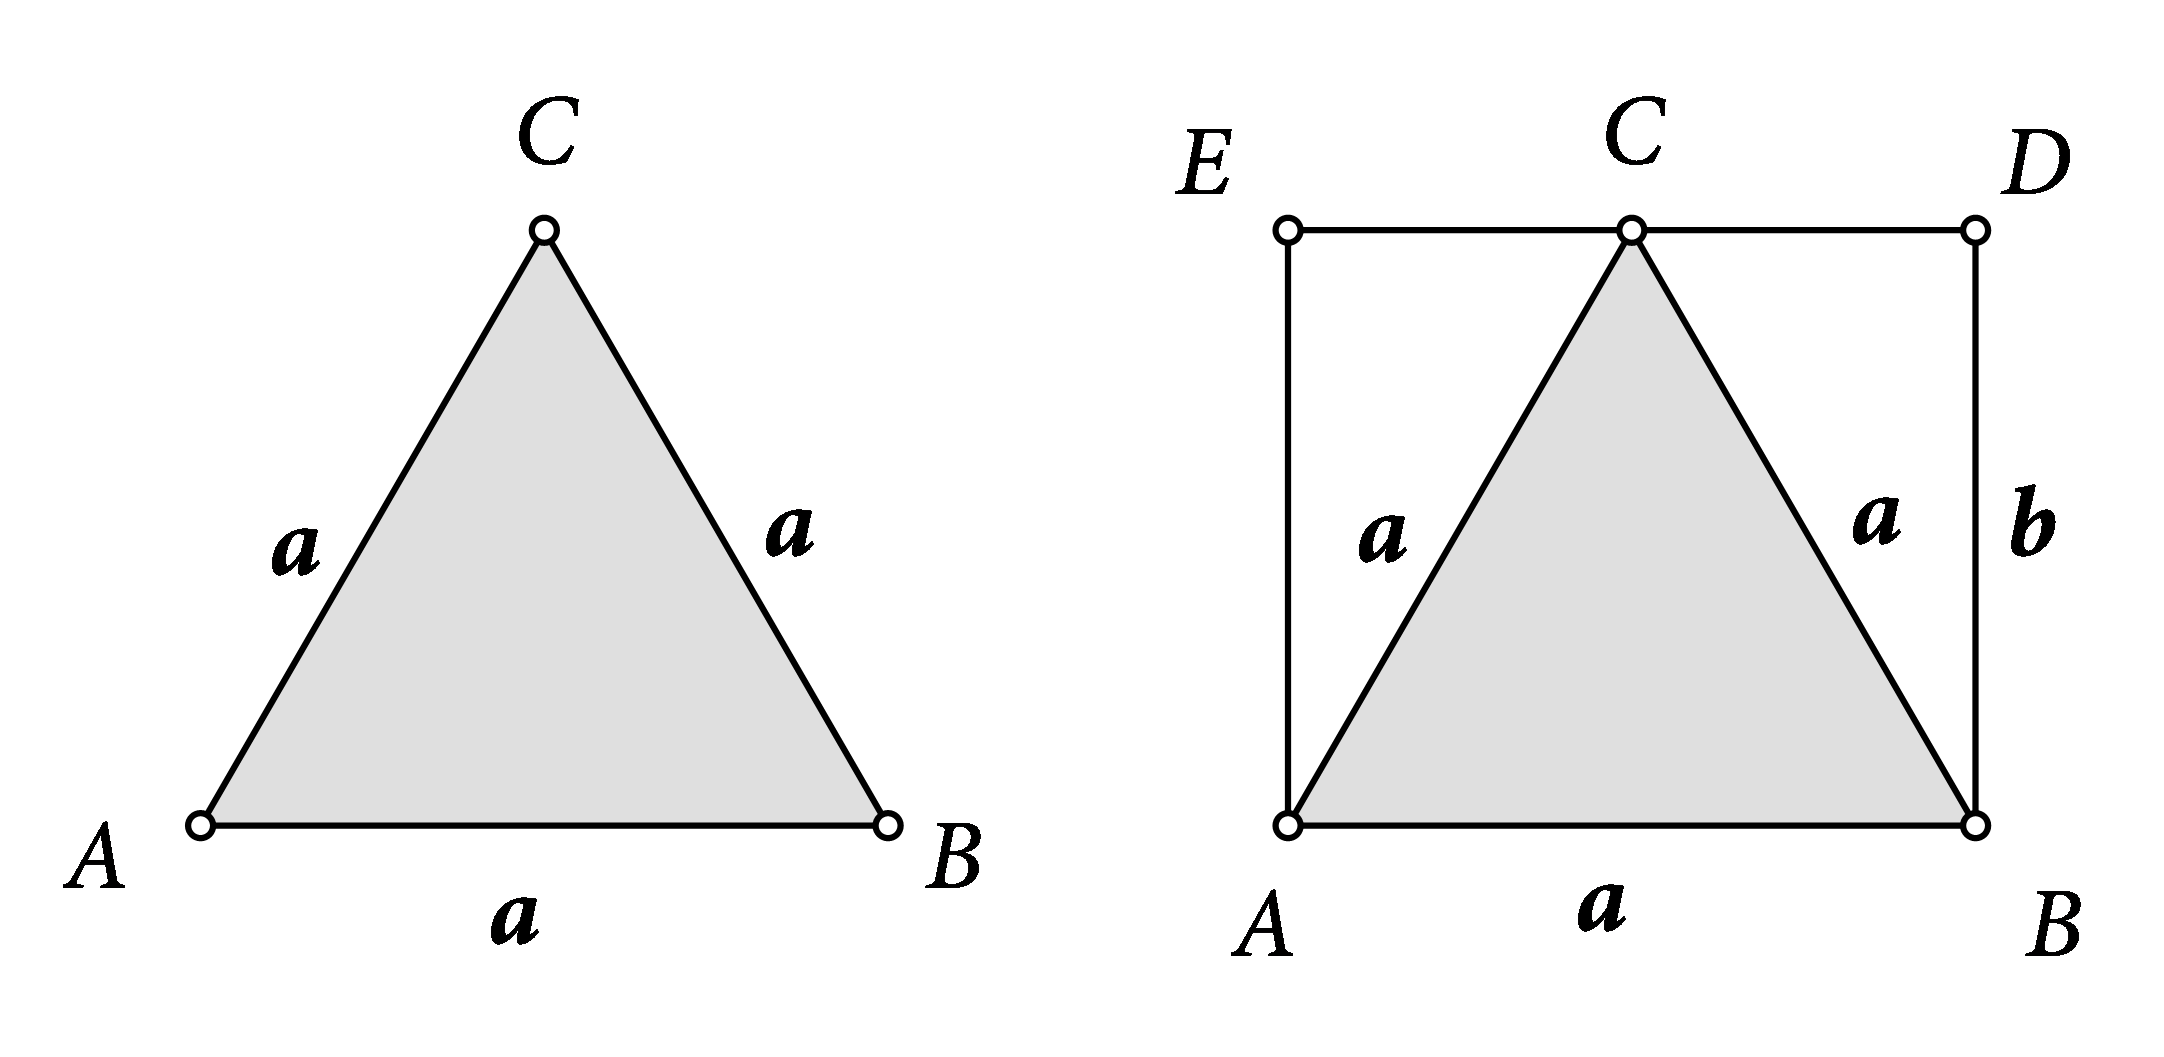 Slike prikazuju jednakostraničan trokut ABC sa stranicom duljine a i isti trokut smješten u pravokutnik ABDE. Jedna stranica pravokutnika podudara se sa stranicom trokuta. Duljina druge stranice pravokutnika označena j slovom b i jednaka je visini jednakostraničnog trokuta.